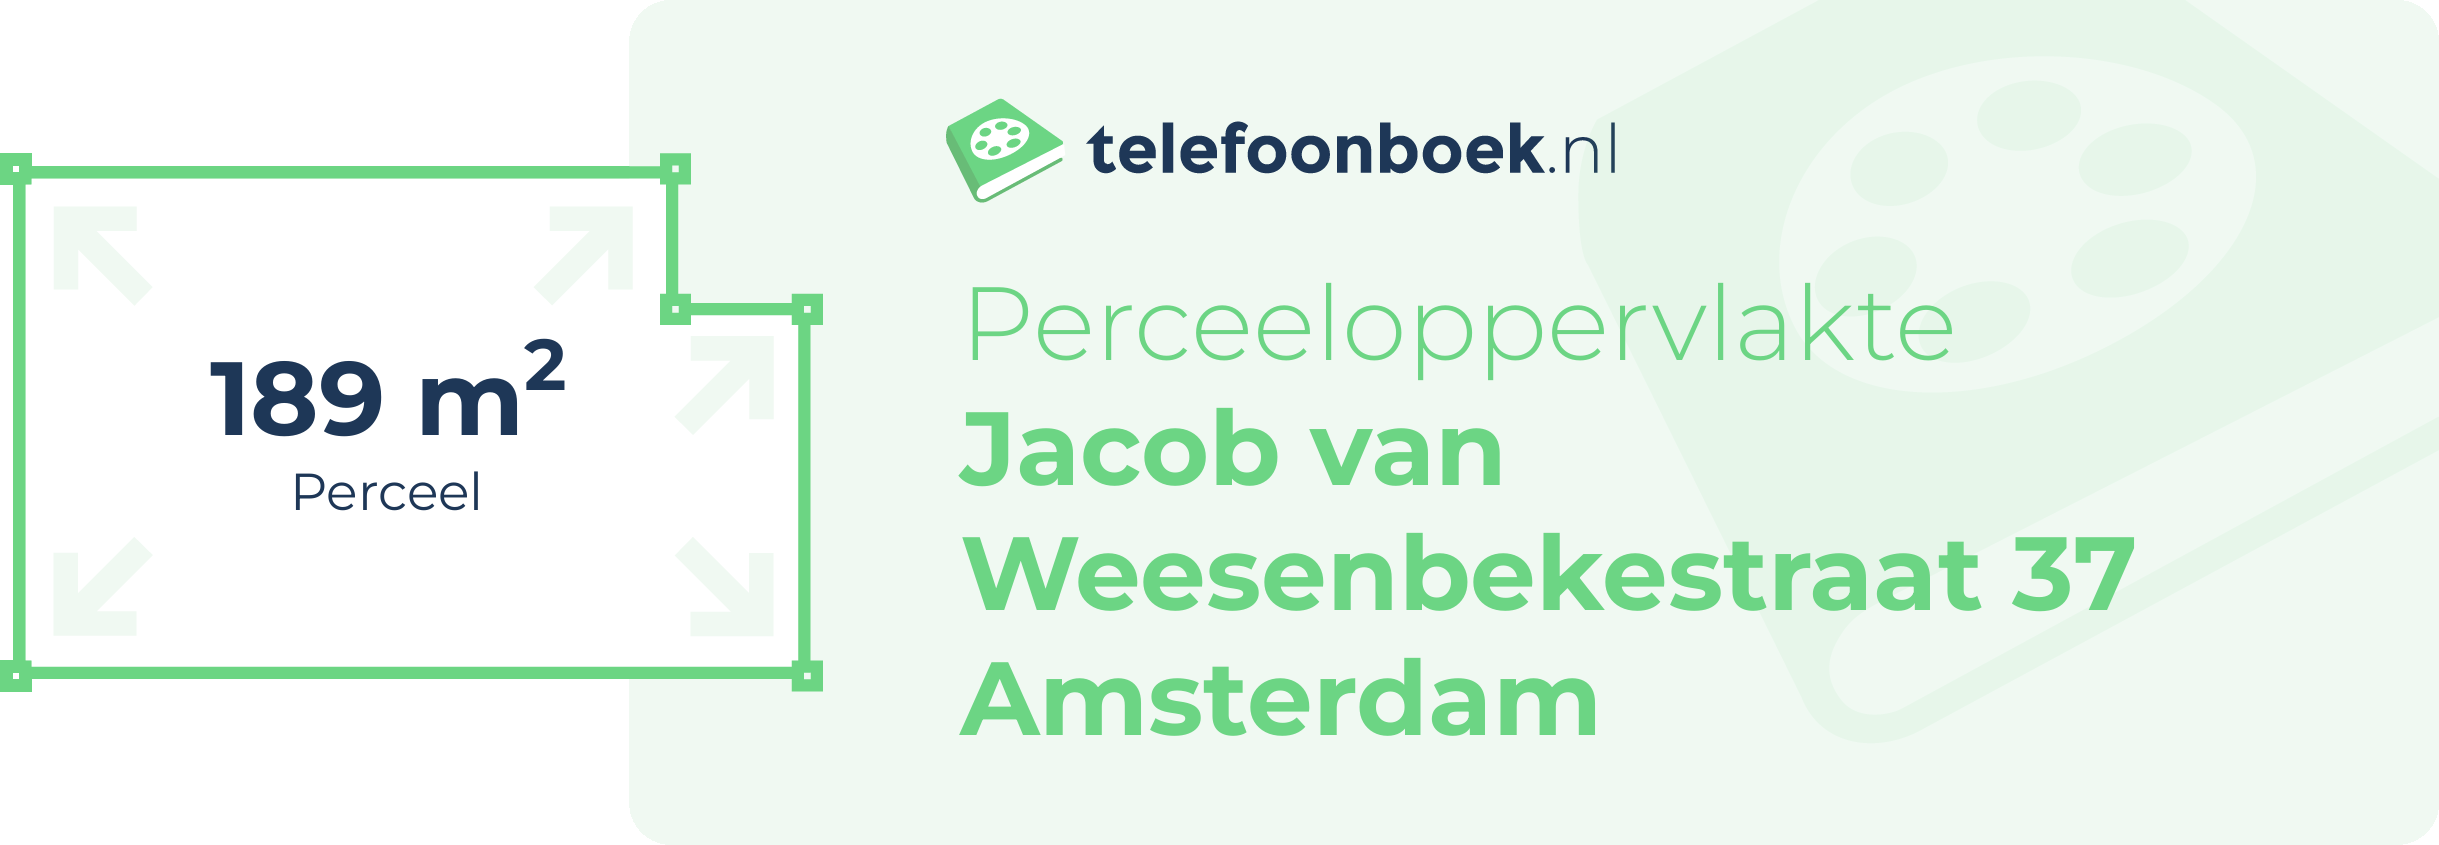 Perceeloppervlakte Jacob Van Weesenbekestraat 37 Amsterdam